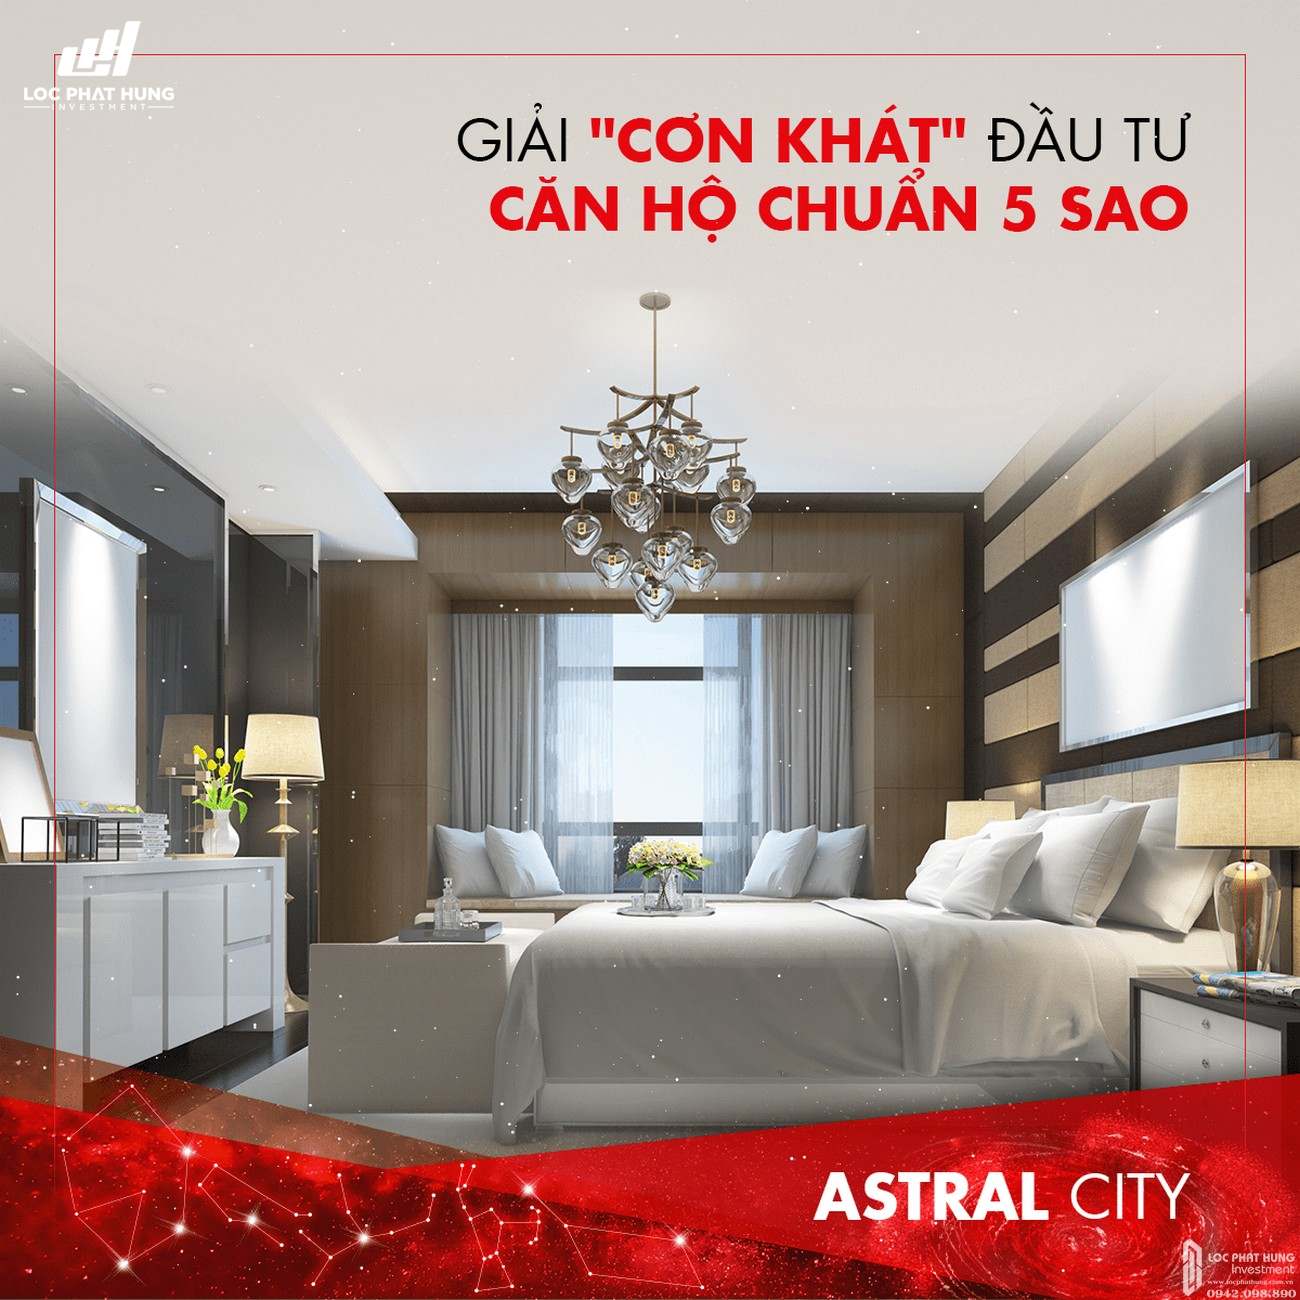 Những ưu điểm vượt trội đưa dự án căn hộ Astral City thành tâm điểm Bình Dương